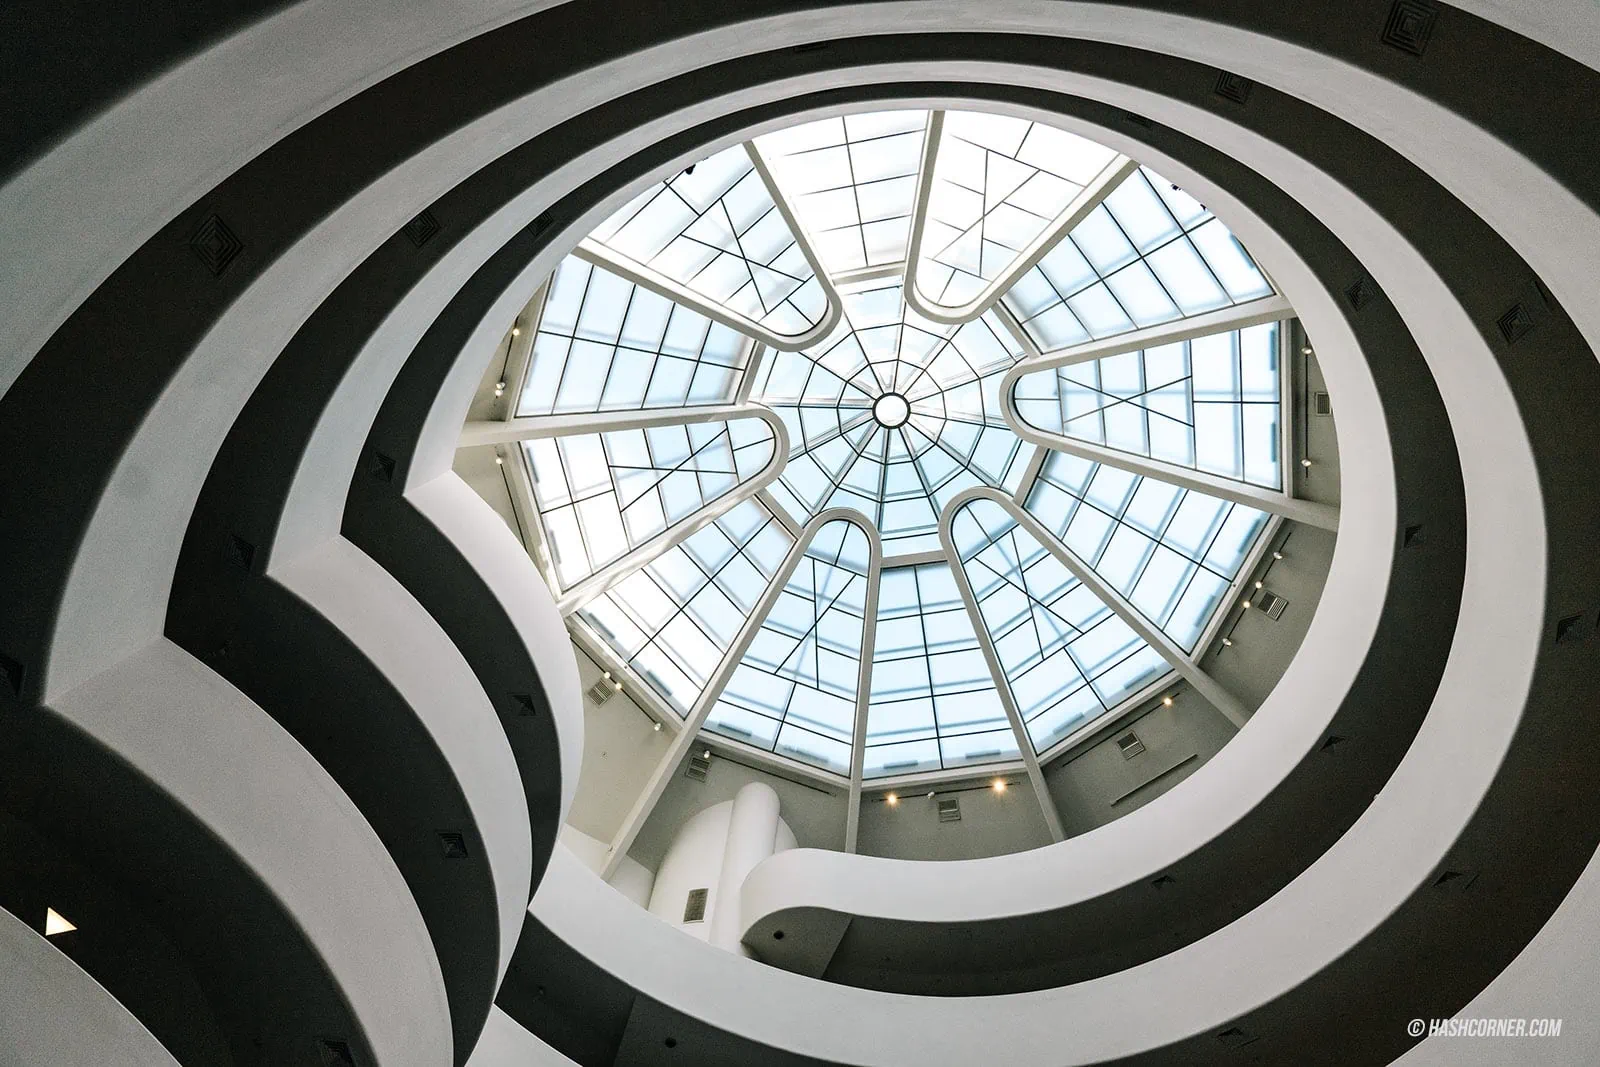 รีวิว Solomon R. Guggenheim Museum x นิวยอร์ก พิพิธภัณฑ์อาร์ตระดับตำนาน